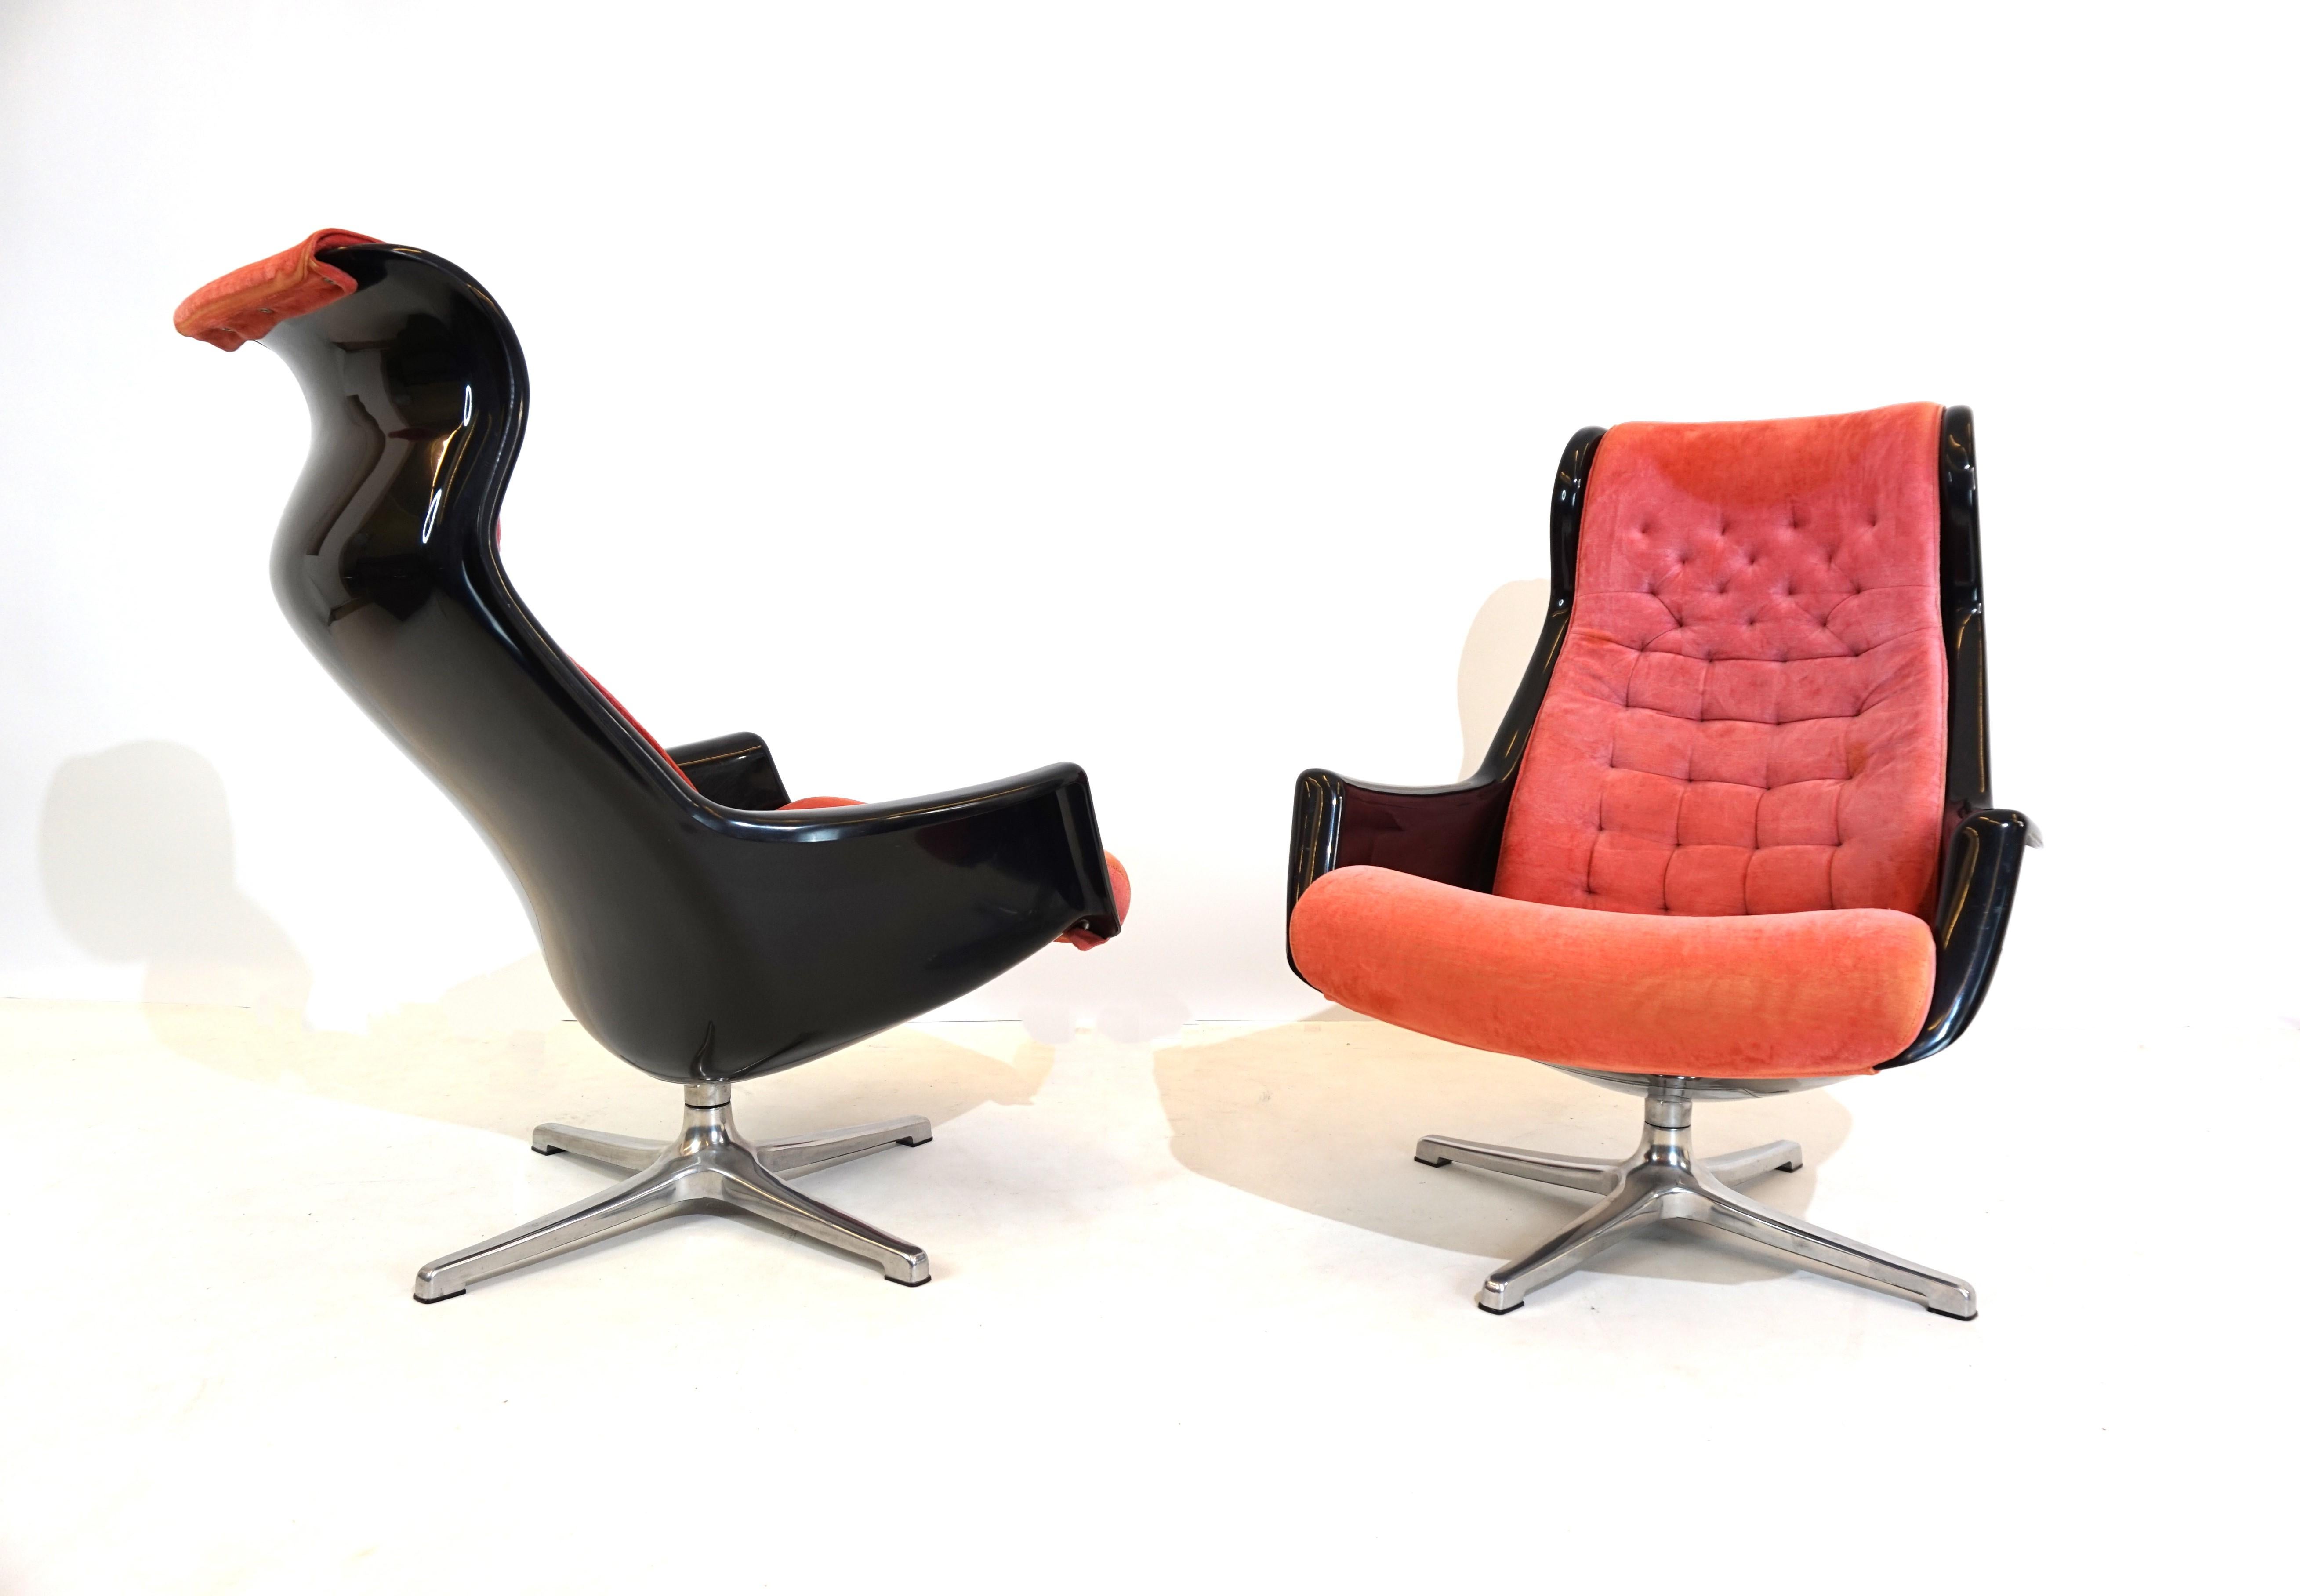 Zwei Galaxy-Sessel in einer fantastischen Farbkombination aus schwarzem Acryl und rosa Polsterung. Die Kunststoffschalen beider Stühle sowie die Metallfüße sind in ausgezeichnetem Zustand und lassen sich leicht drehen. Die Polsterung der Sessel